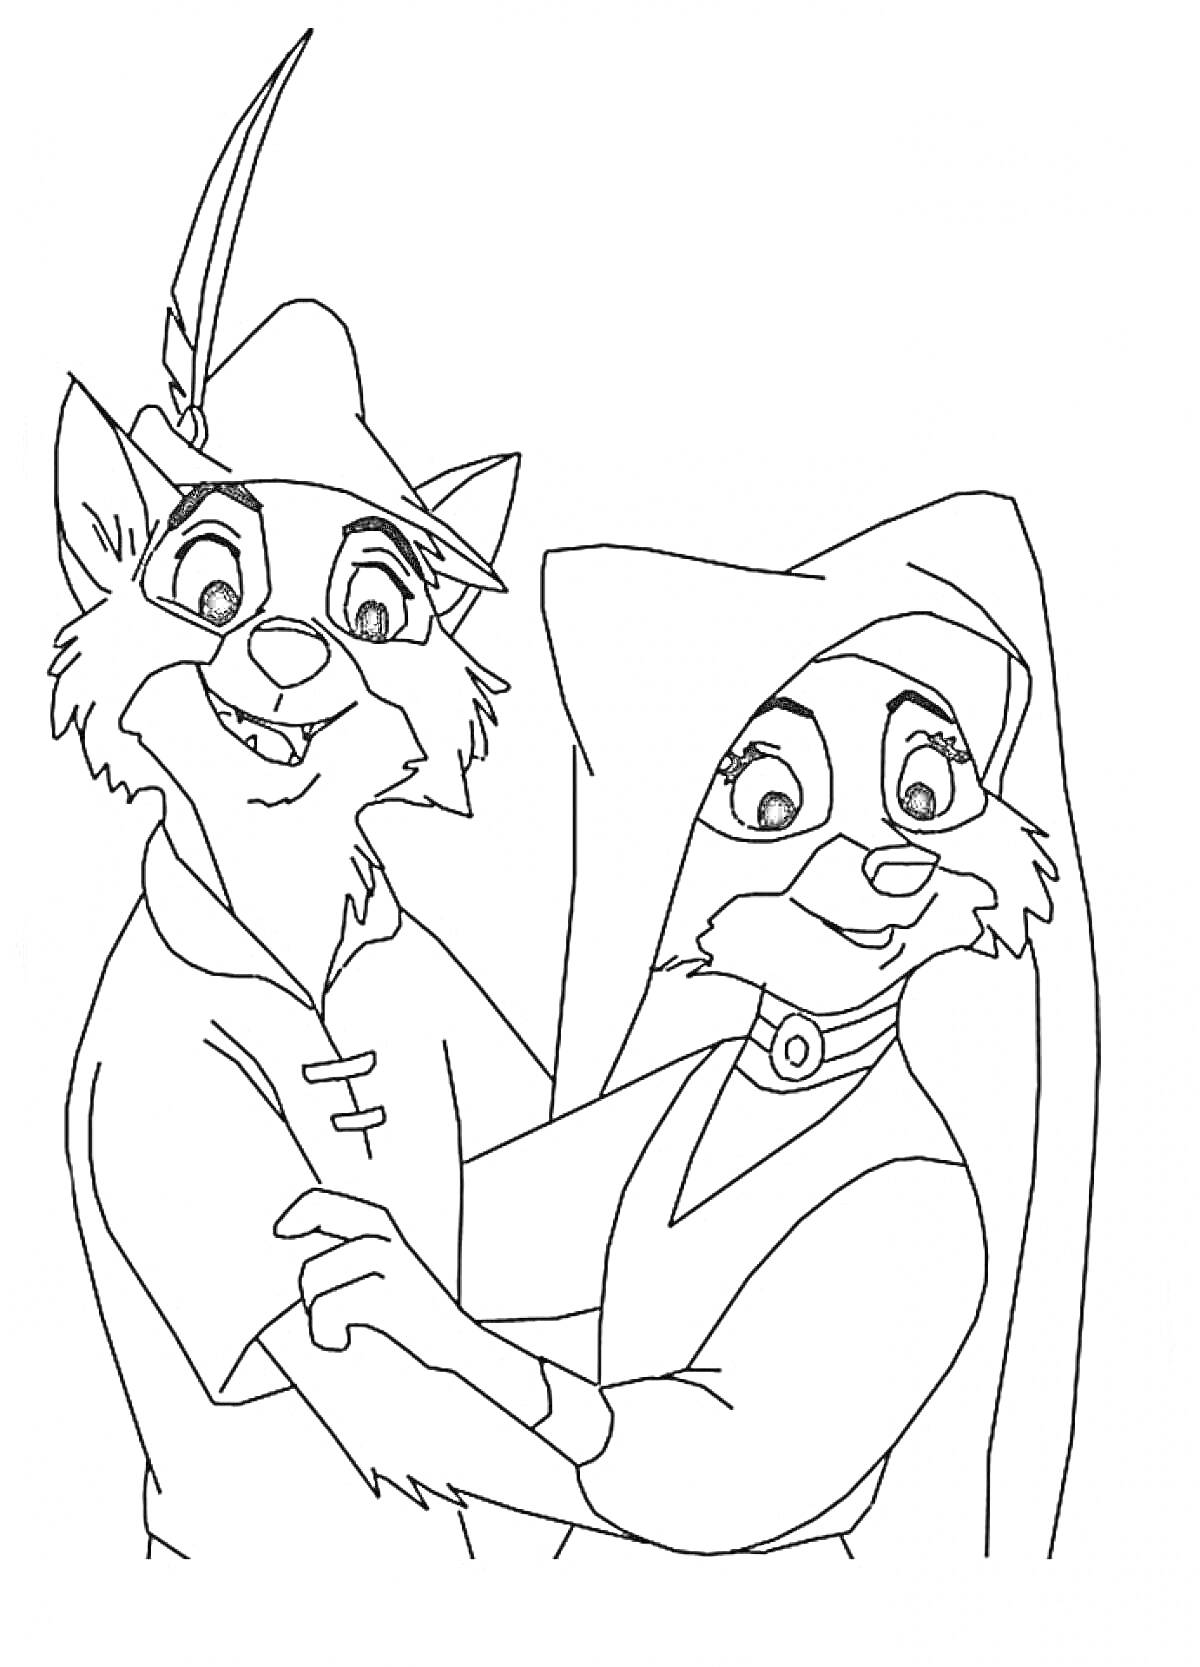 Раскраска Два антропоморфных персонажа из мультфильма, один в шляпе с пером, второй - в головном уборе и платье.